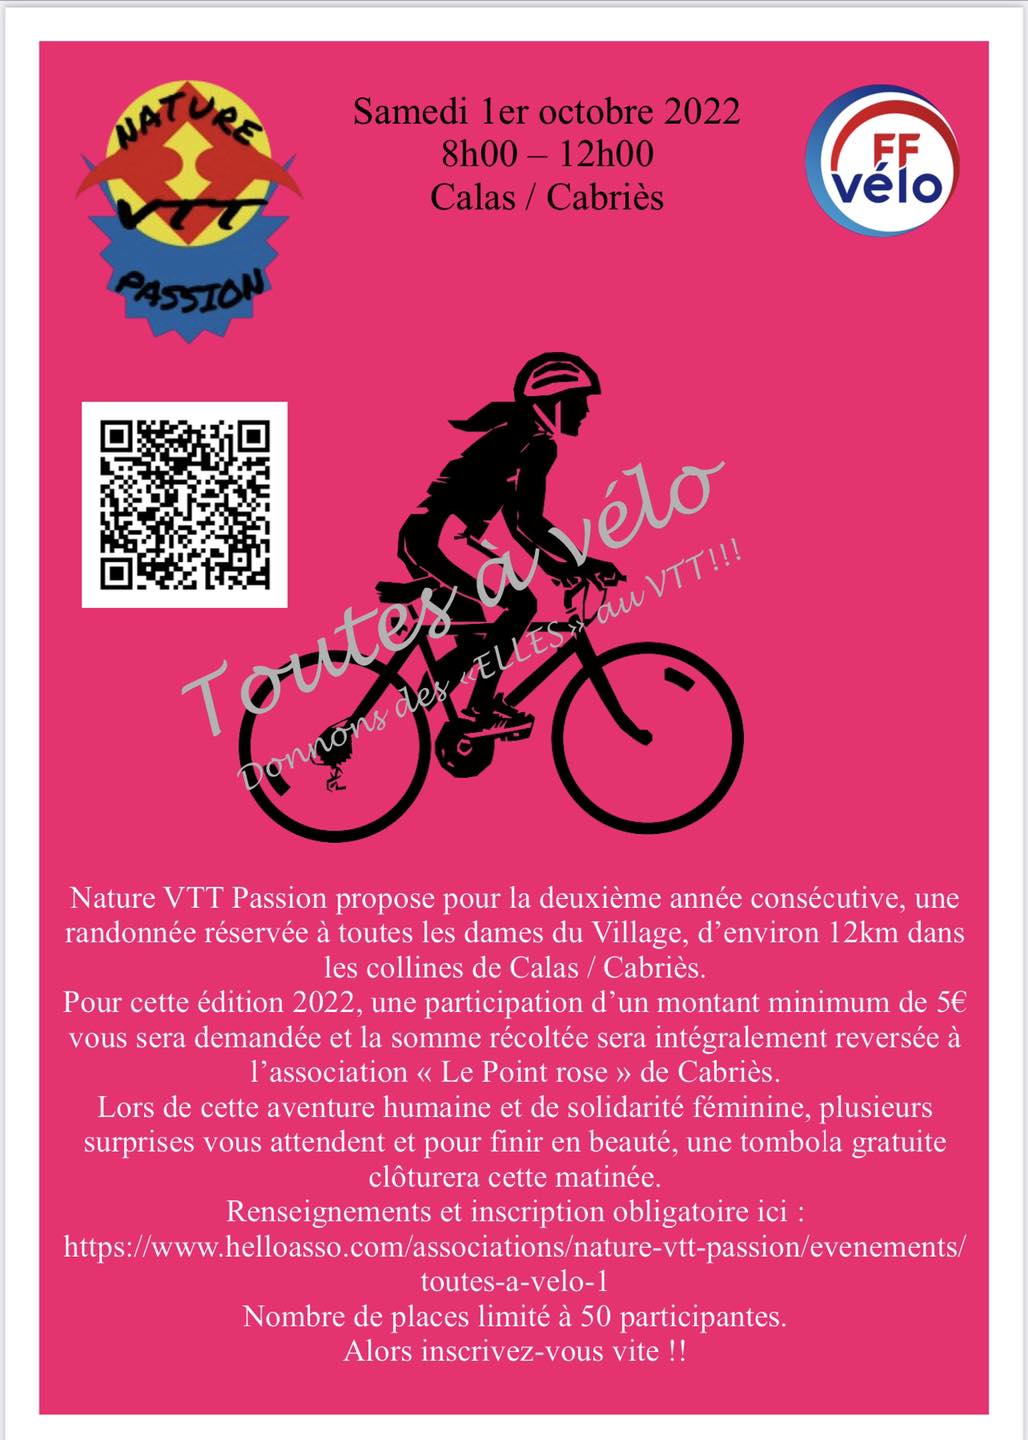 Toutes en vélo / run for Le Point rose